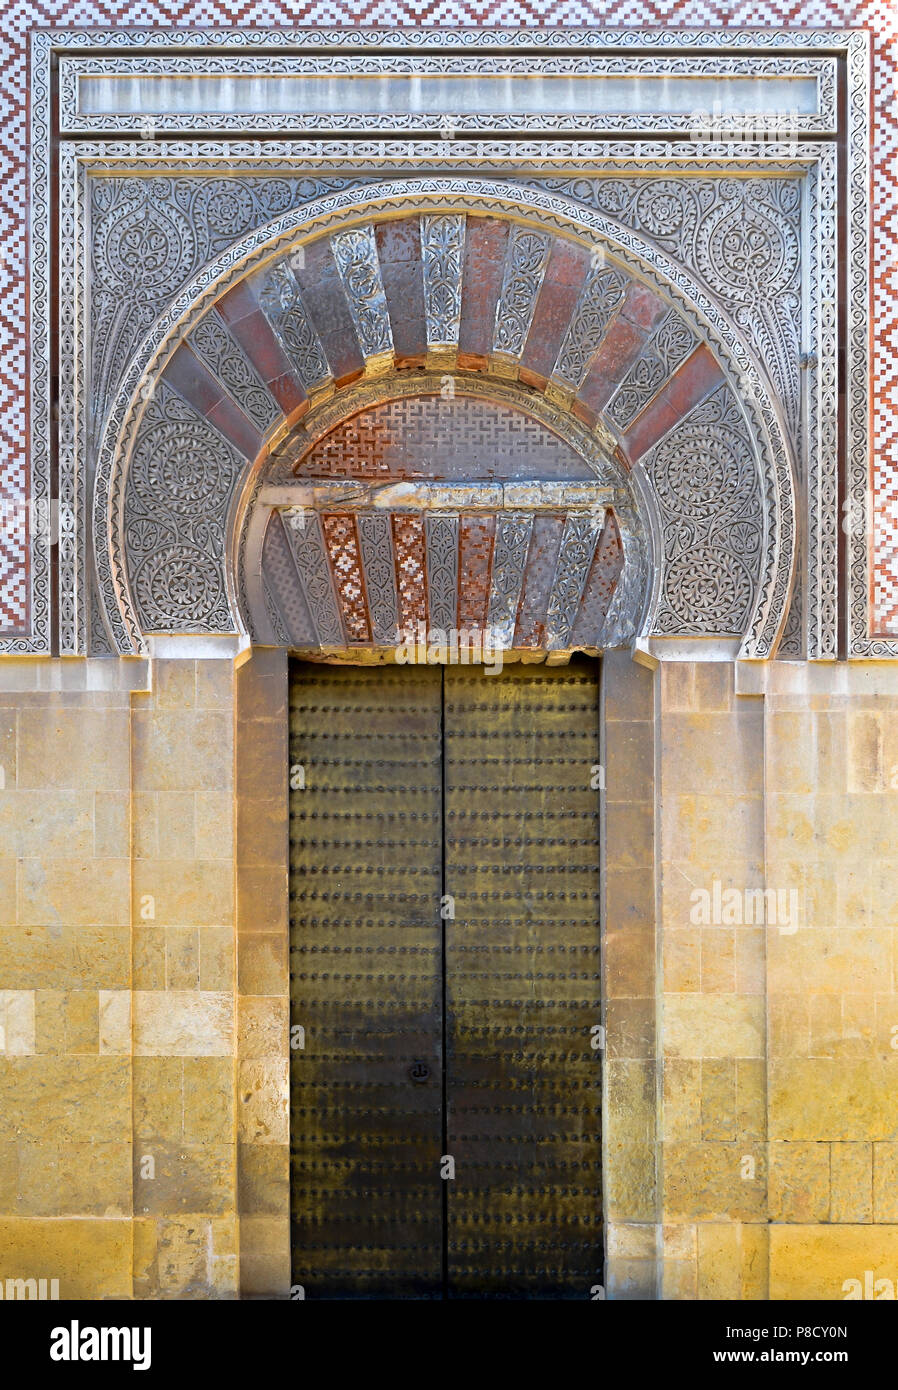 Golden Door sur la musquée Mosque-Cathedral à Cordoue, Andalousie Espagne Banque D'Images